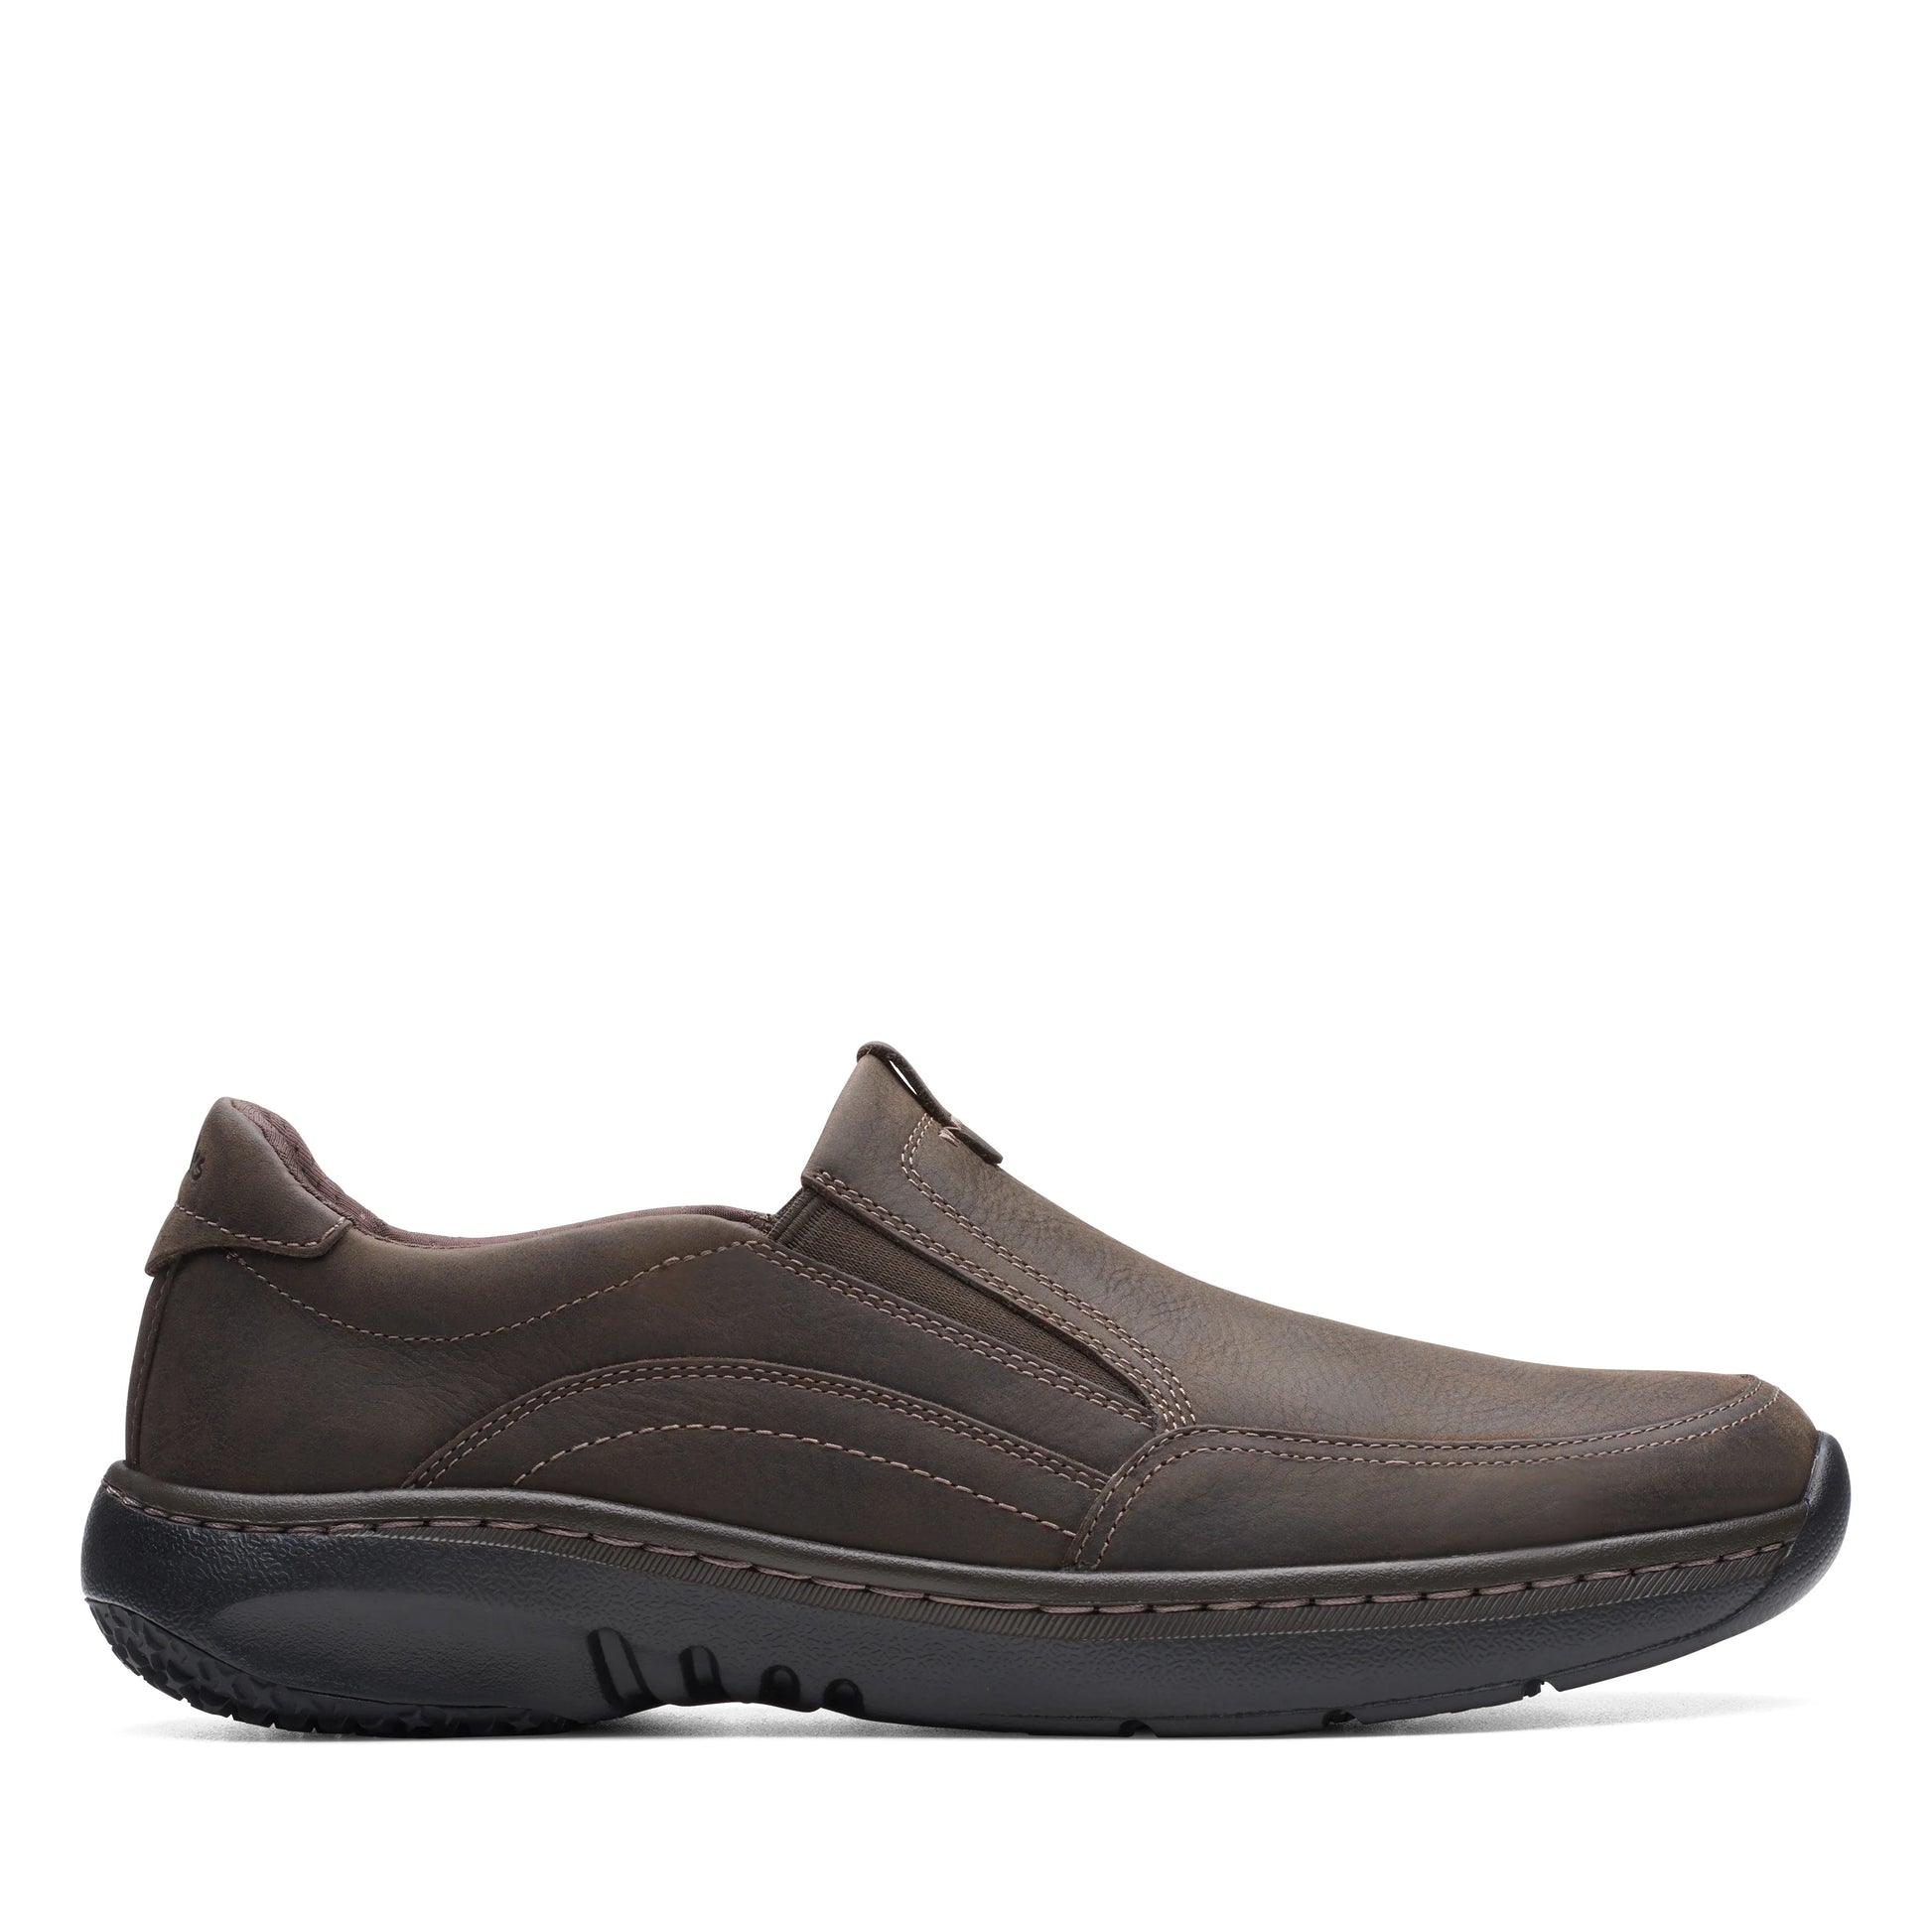 zapatos derby de la marca clarks modelo clarkspro step dark brn tumbled para hombre en color marrón